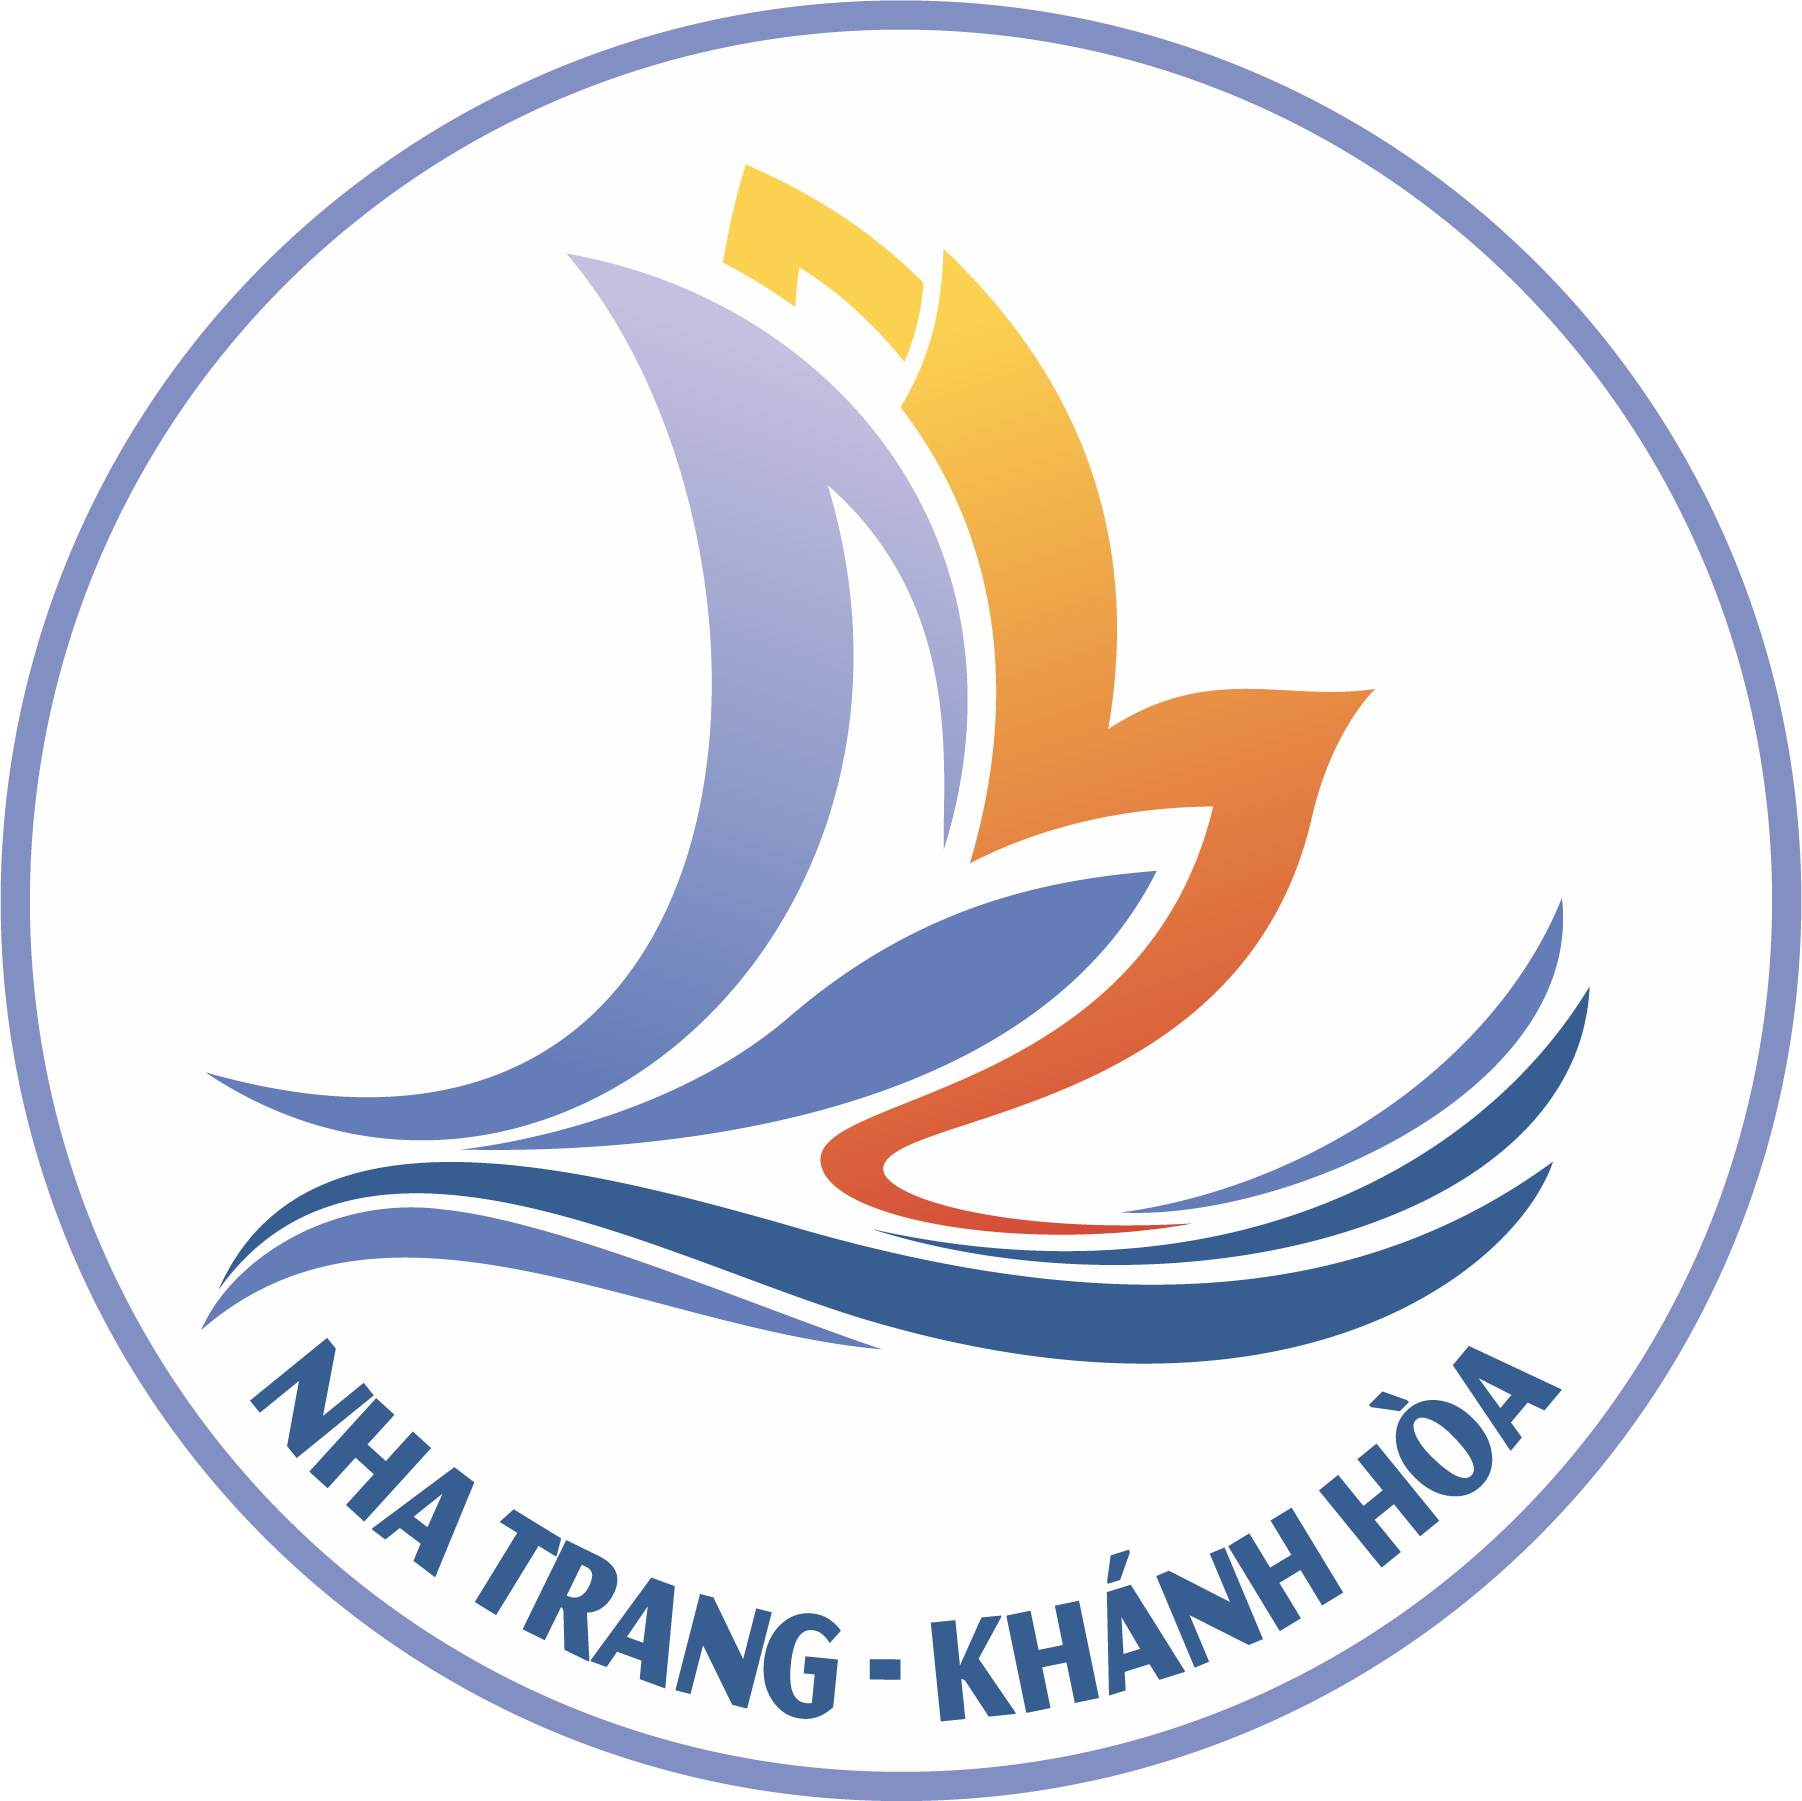 Cổng thông tin du lịch Khánh Hòa - Khanh Hoa Tourism Information Portal